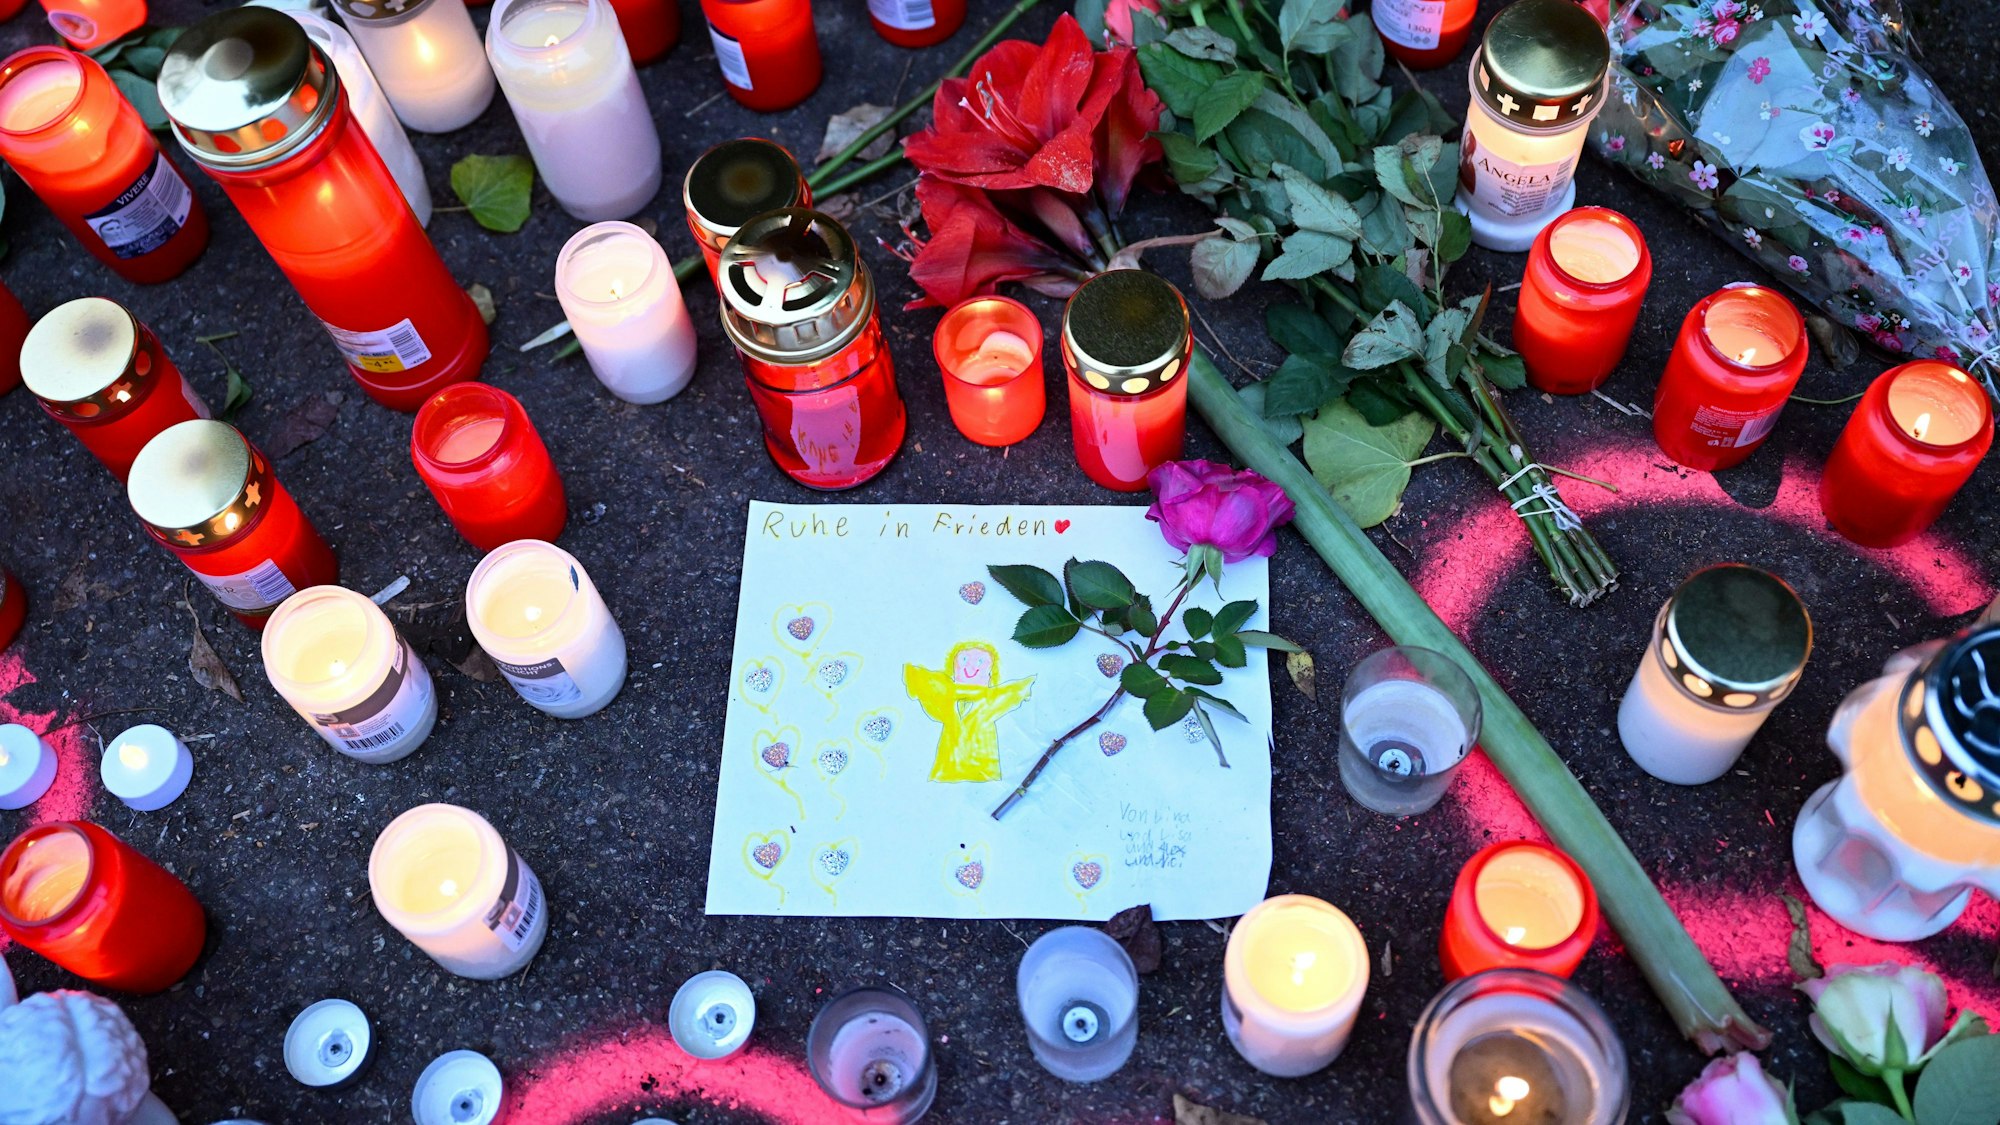 Kerzen und Blumen stehen an einem Tatort, an dem am Tag zuvor zwei Mädchen von einem Mann mit einem Messer angegriffen wurden. In der Mitte ist ein gemaltes Bild von einem Engel, über dem „Ruhe in Frieden“ steht.